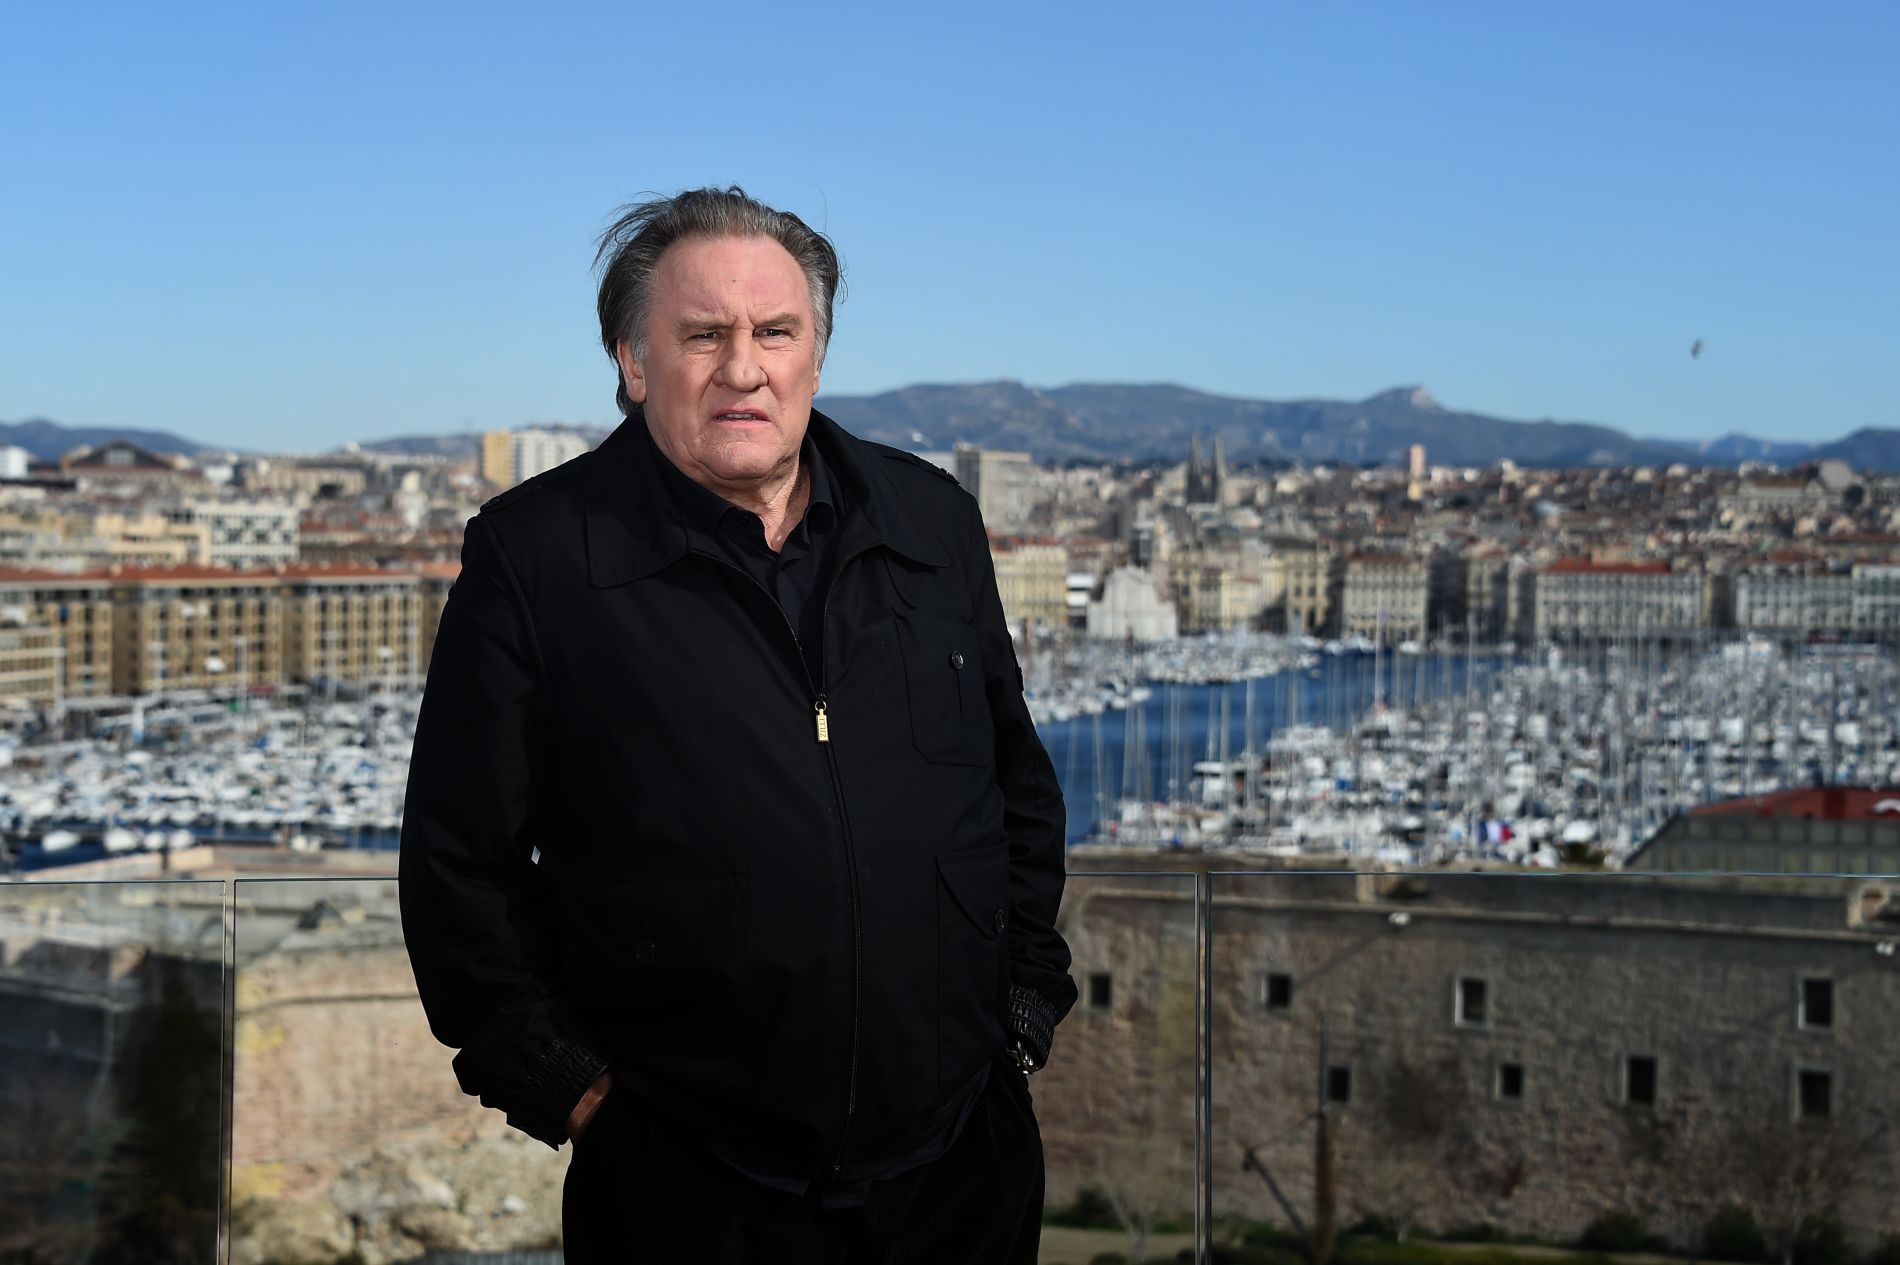 Lezárták a nemi erőszak miatti nyomozást Gérard Depardieu ellen